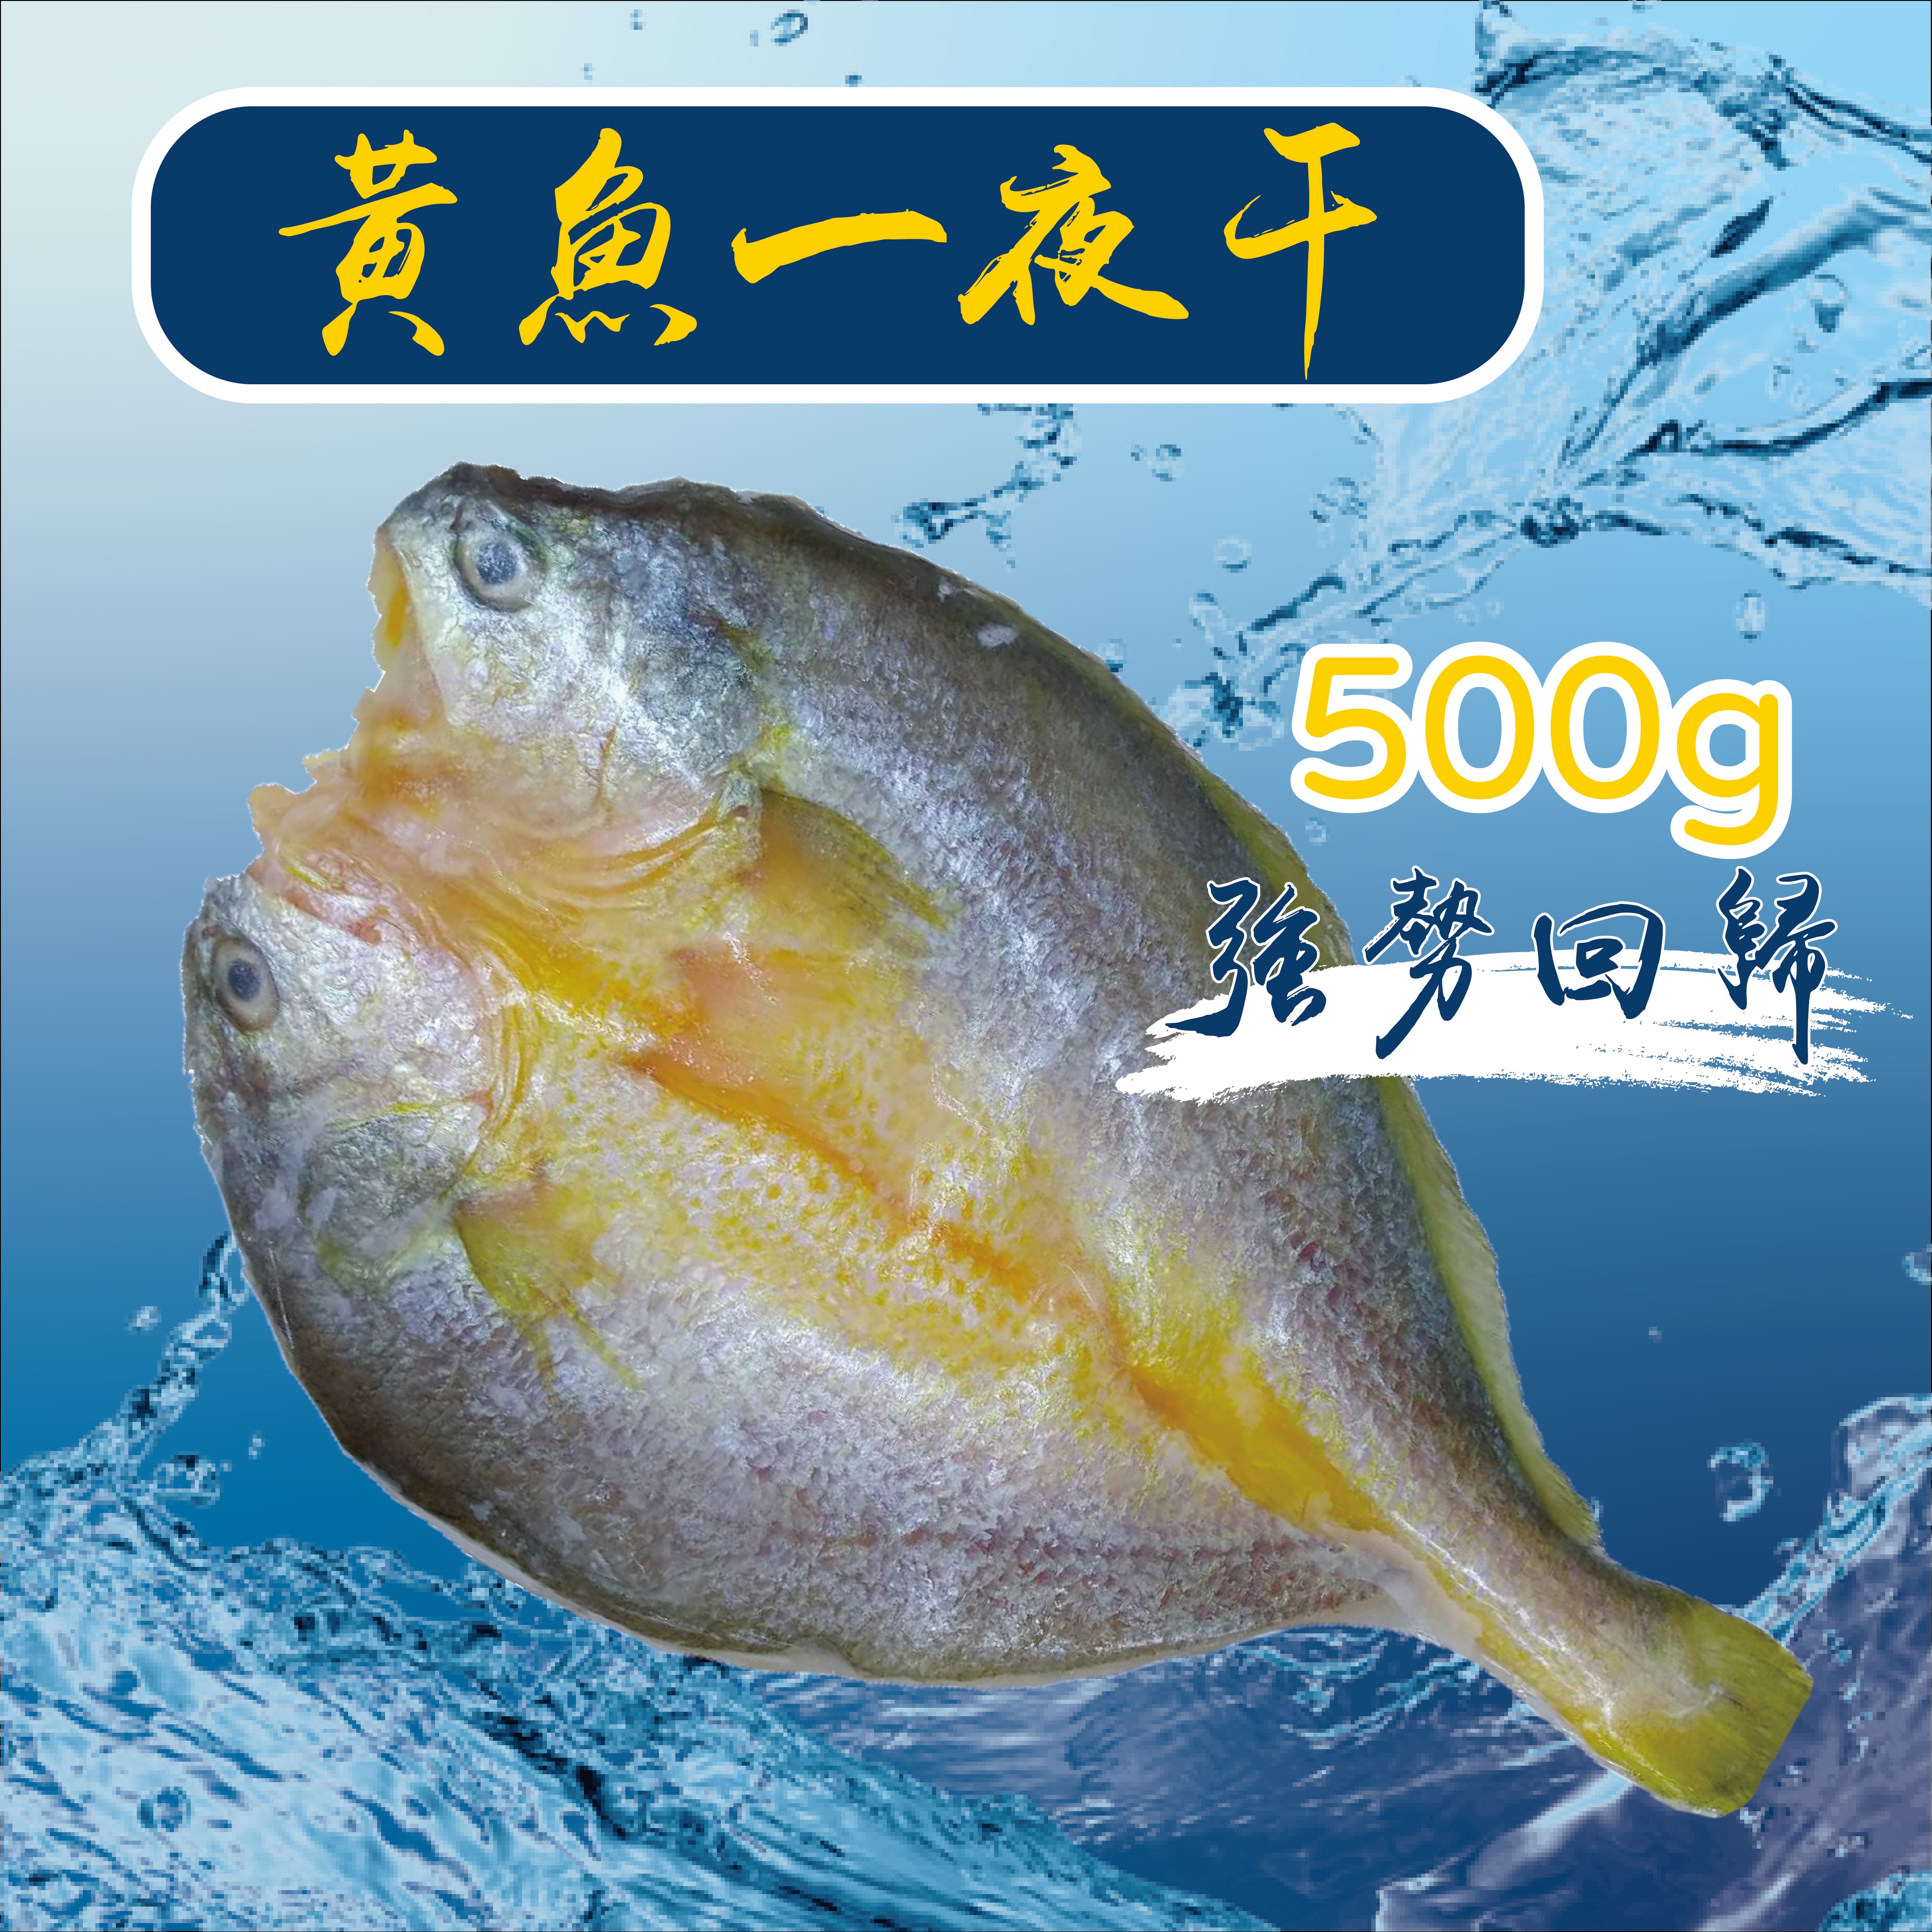  【冷凍】黃魚一夜干-500g